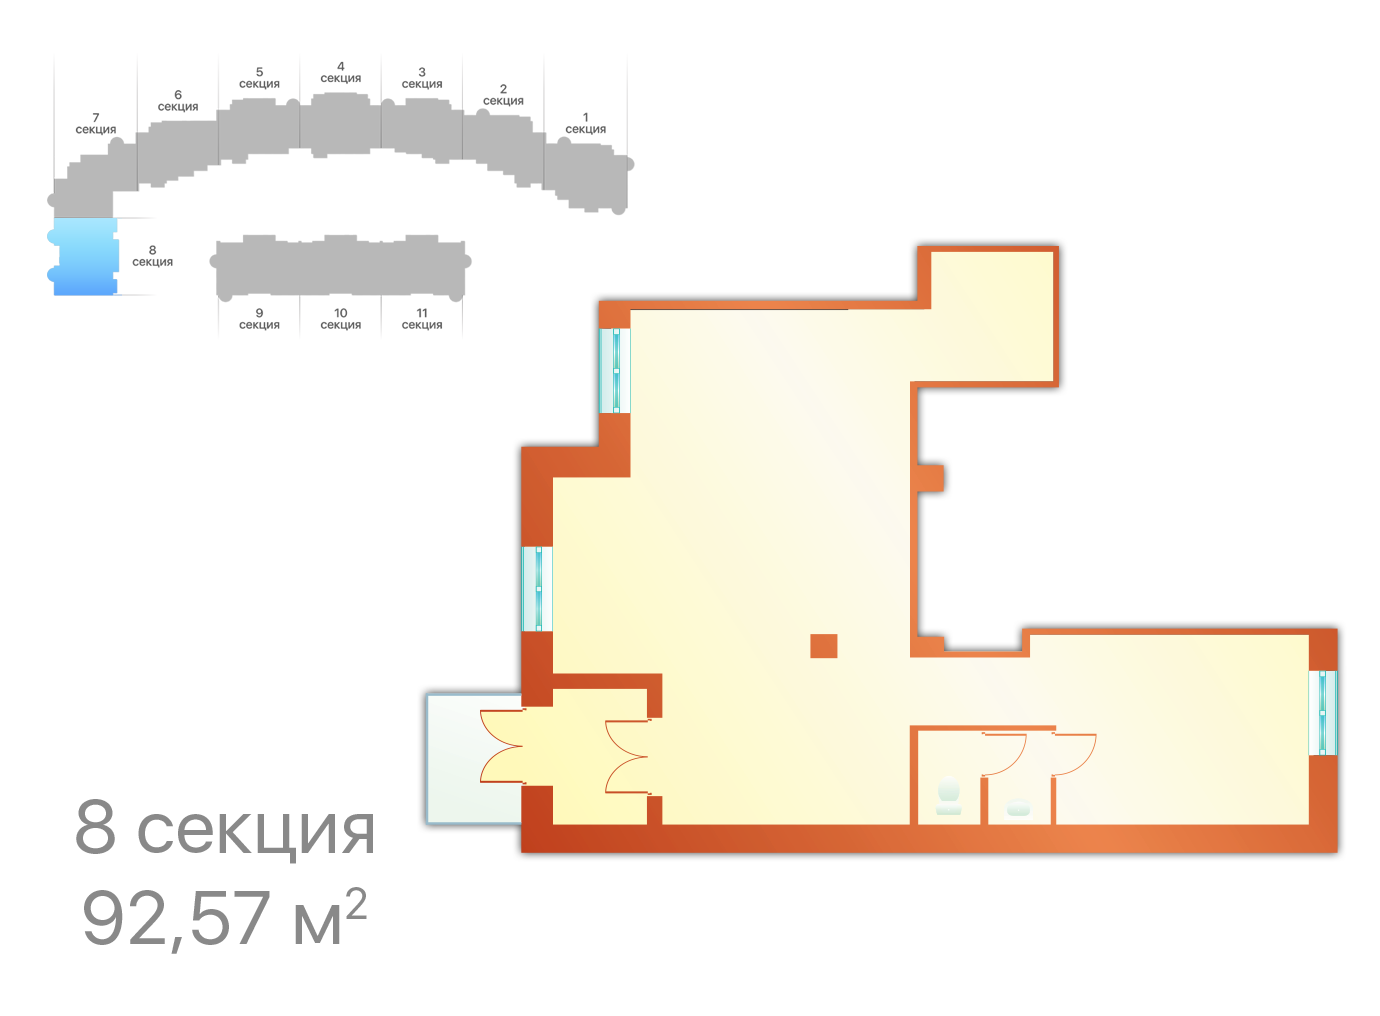 Секция 8, ЖК Шереметевский дворец, коммерческие помещения